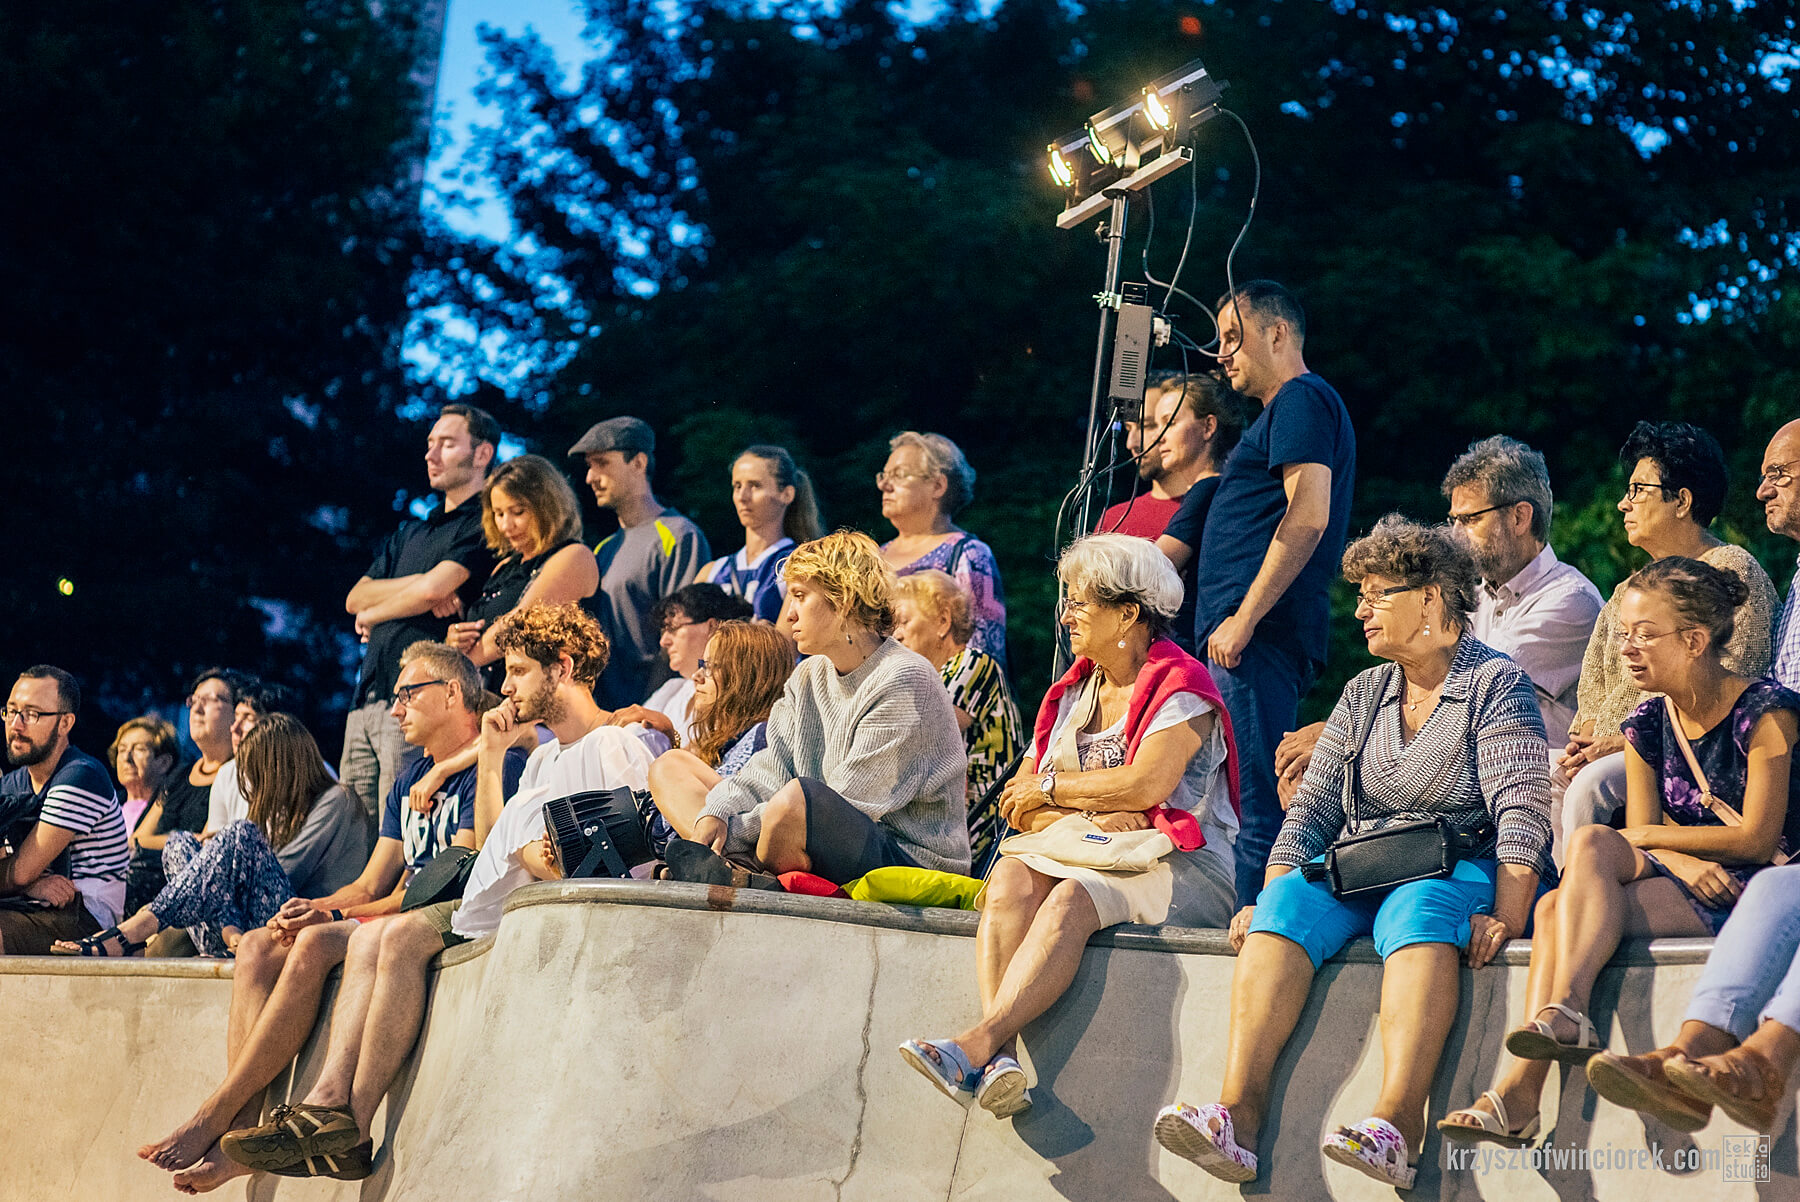 zdjęcie widzów spektaklu siedzących na rampie w skate parku, wieczorem